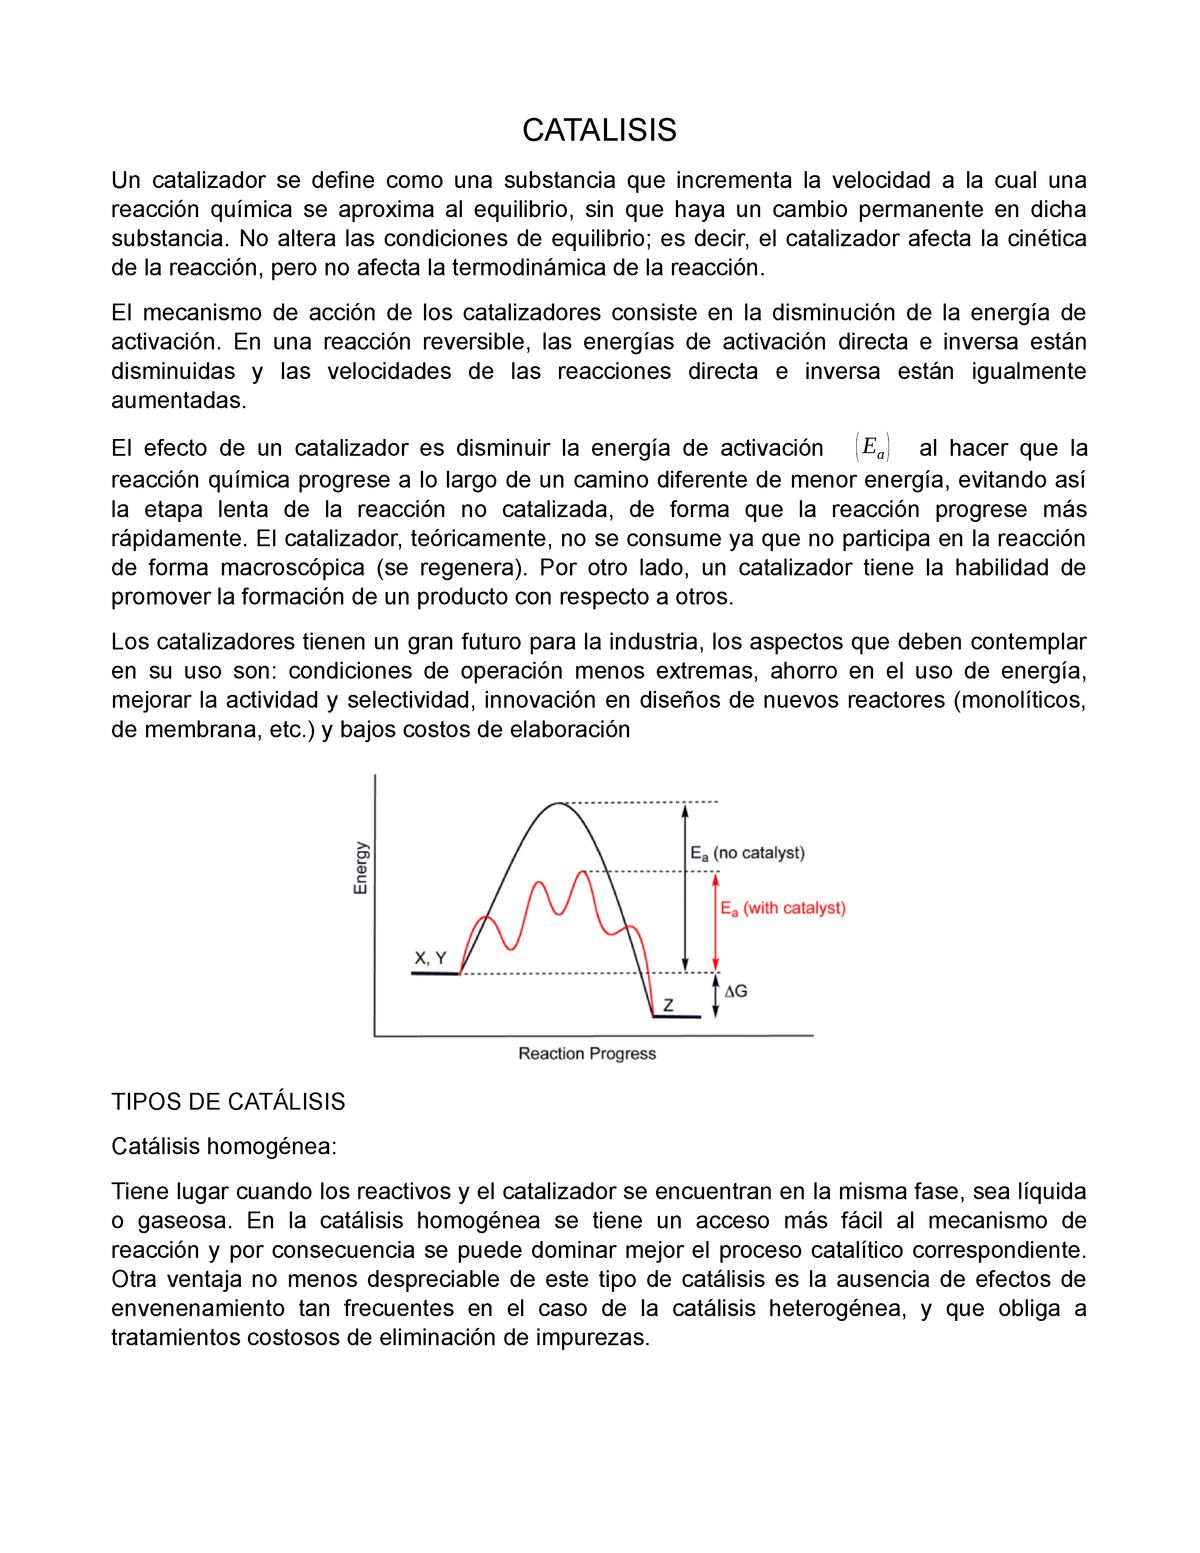 CATALIZADORES, PDF